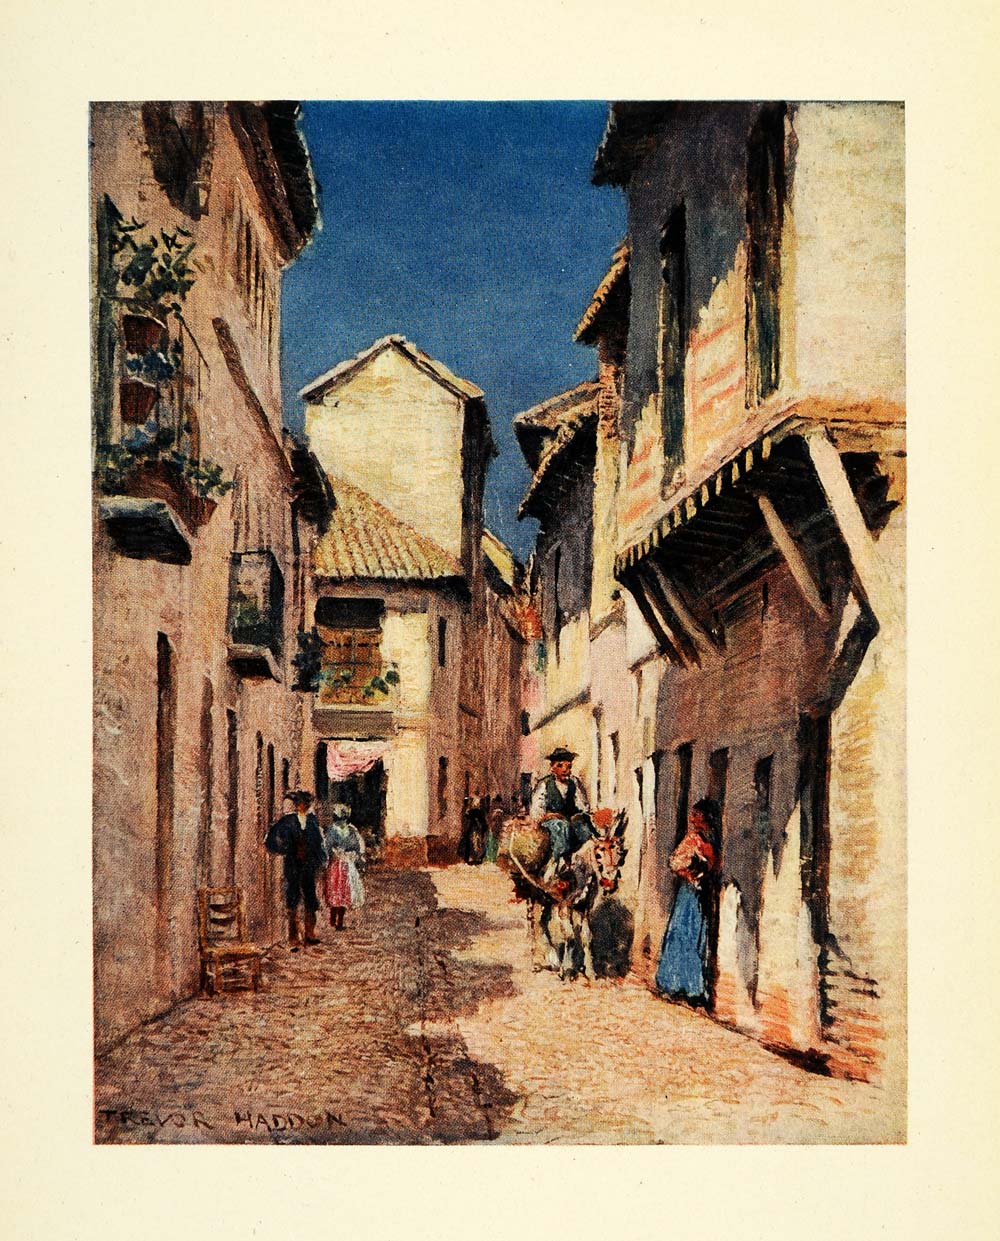 1908 Print Trevor Haddon Artwork Cordova Spain Cobblestone Street View XGC5